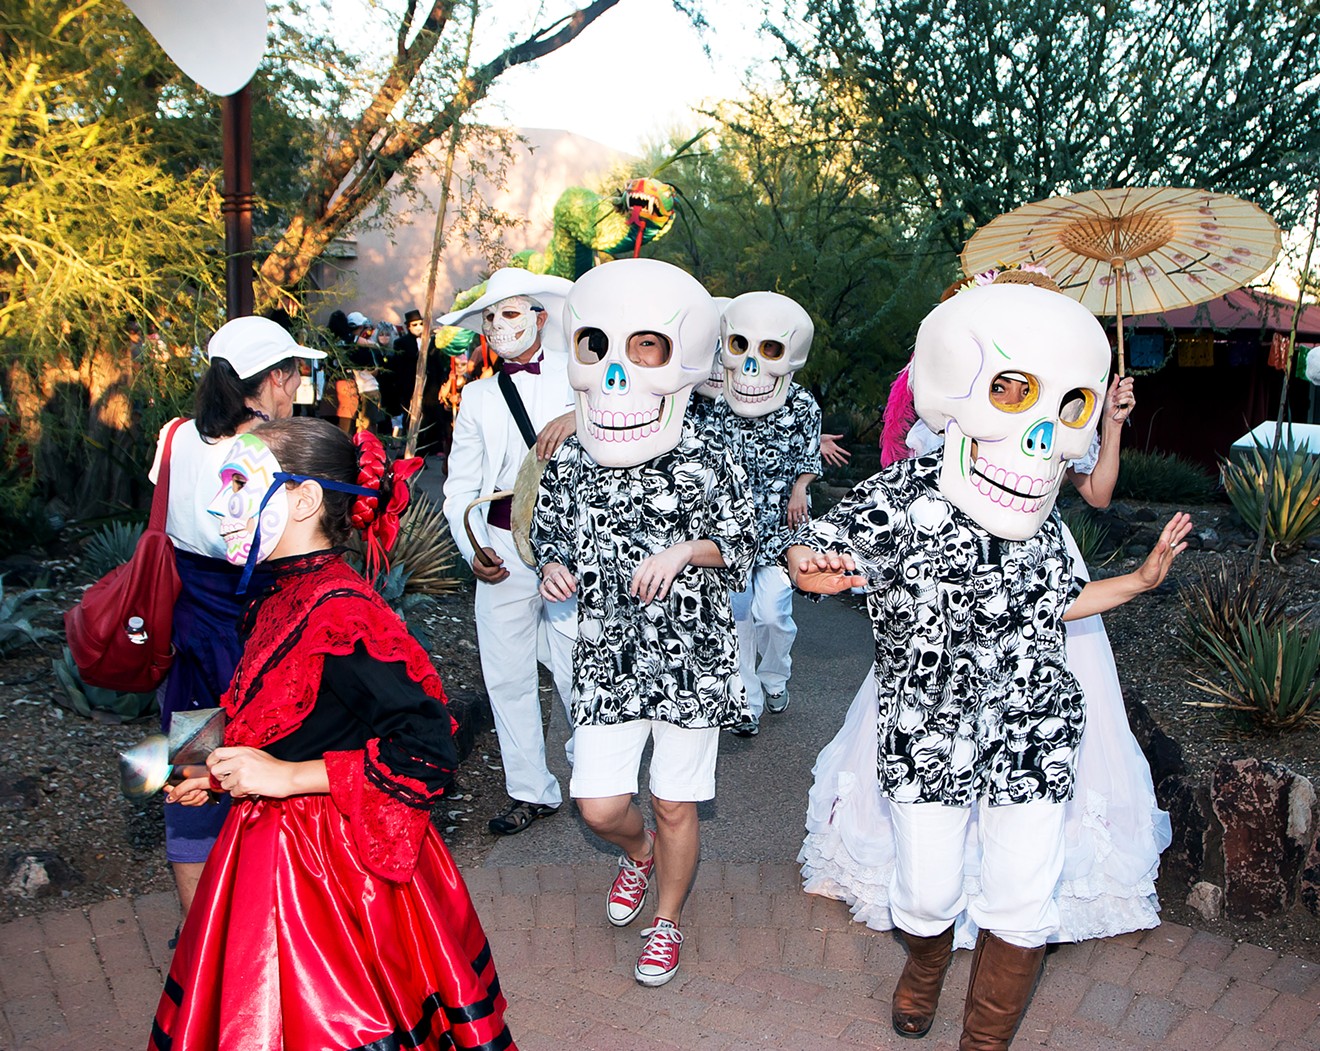 Previous Dia de los Muertos procession at Desert Botanical Garden.